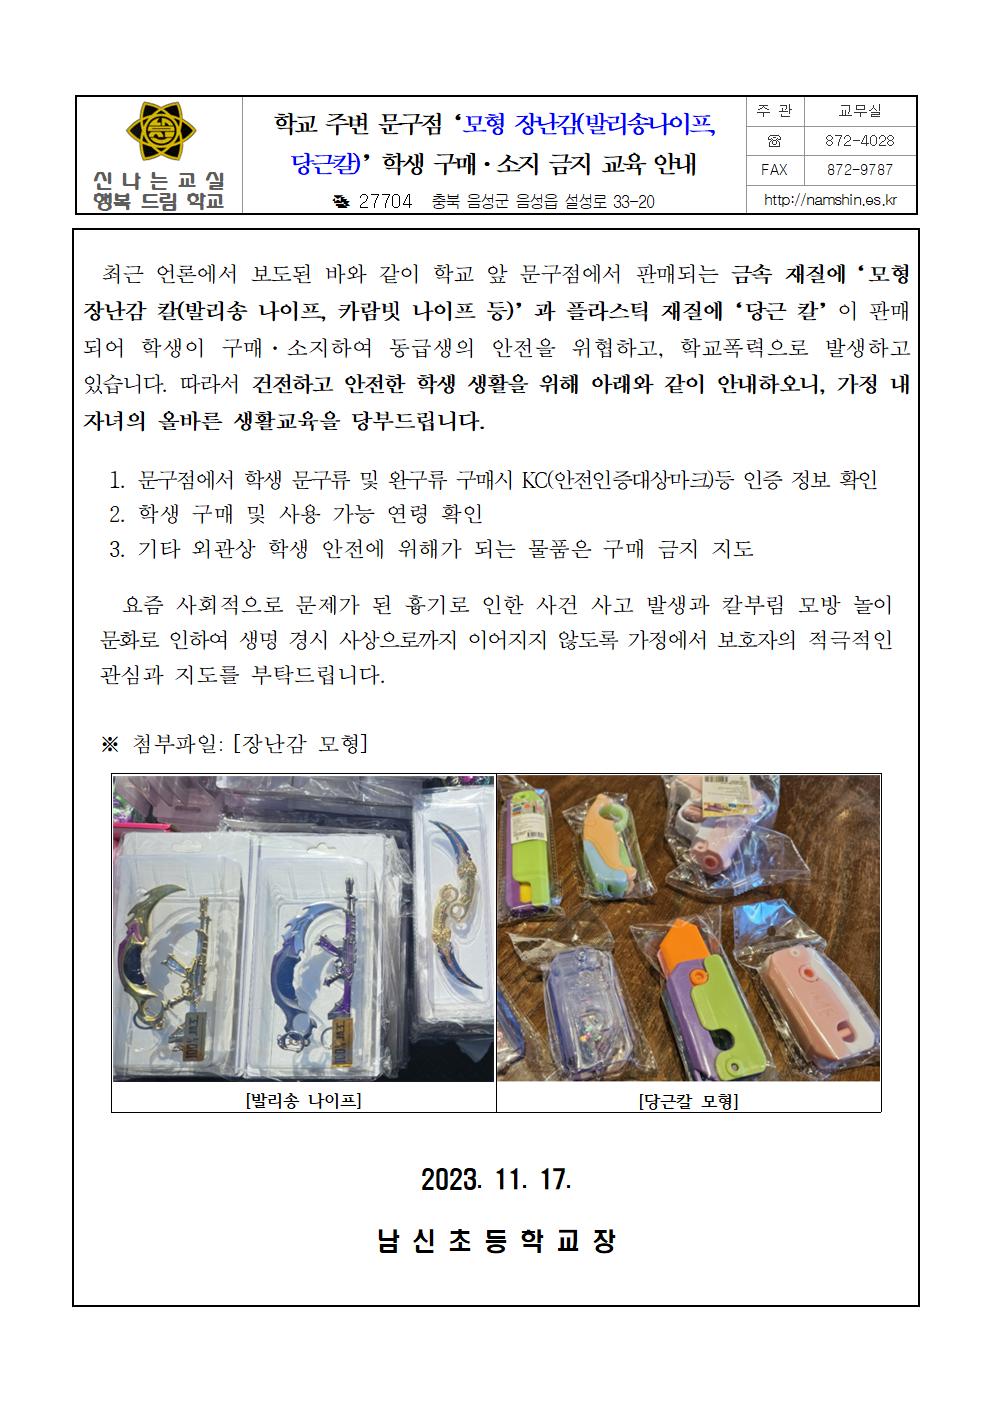 학교 주변 문구점‘모형 장난감(발리송나이프, 당근칼)’학생 구매·소지 금지 교육 안내장001